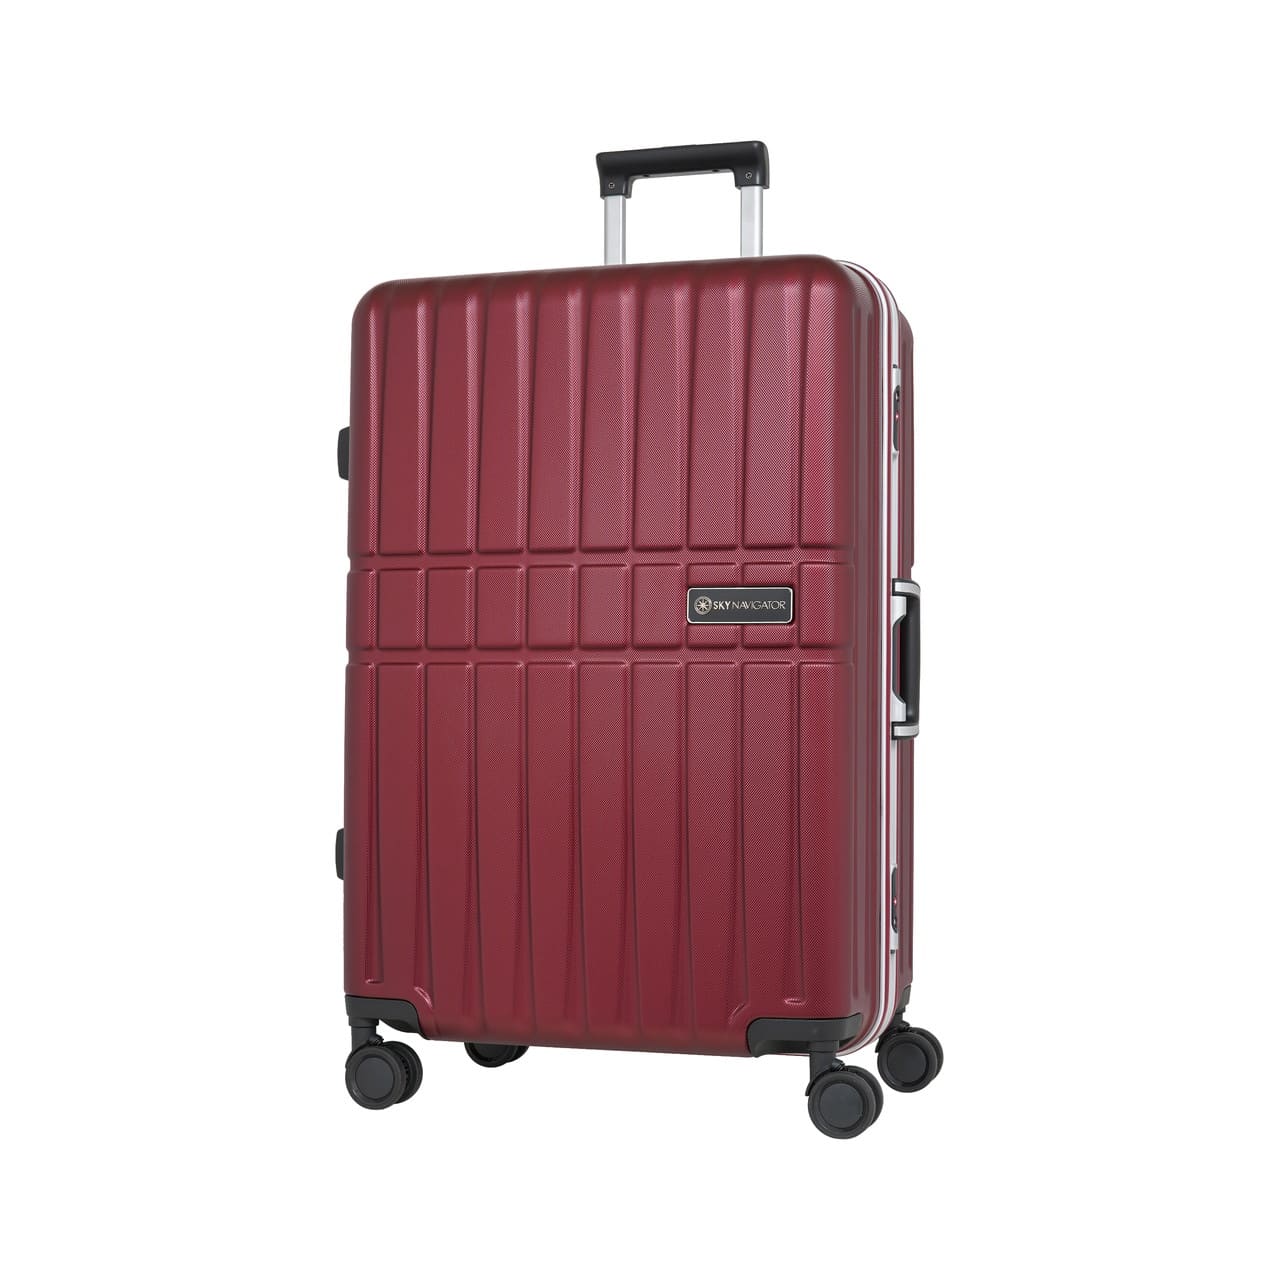 スーツケース Lサイズ 7泊以上 1週間以上 キャリーケース 静音 軽量 大容量 フレーム 旅行 ビジネス トラベル スカイナビゲーター  【Yahoo1位】